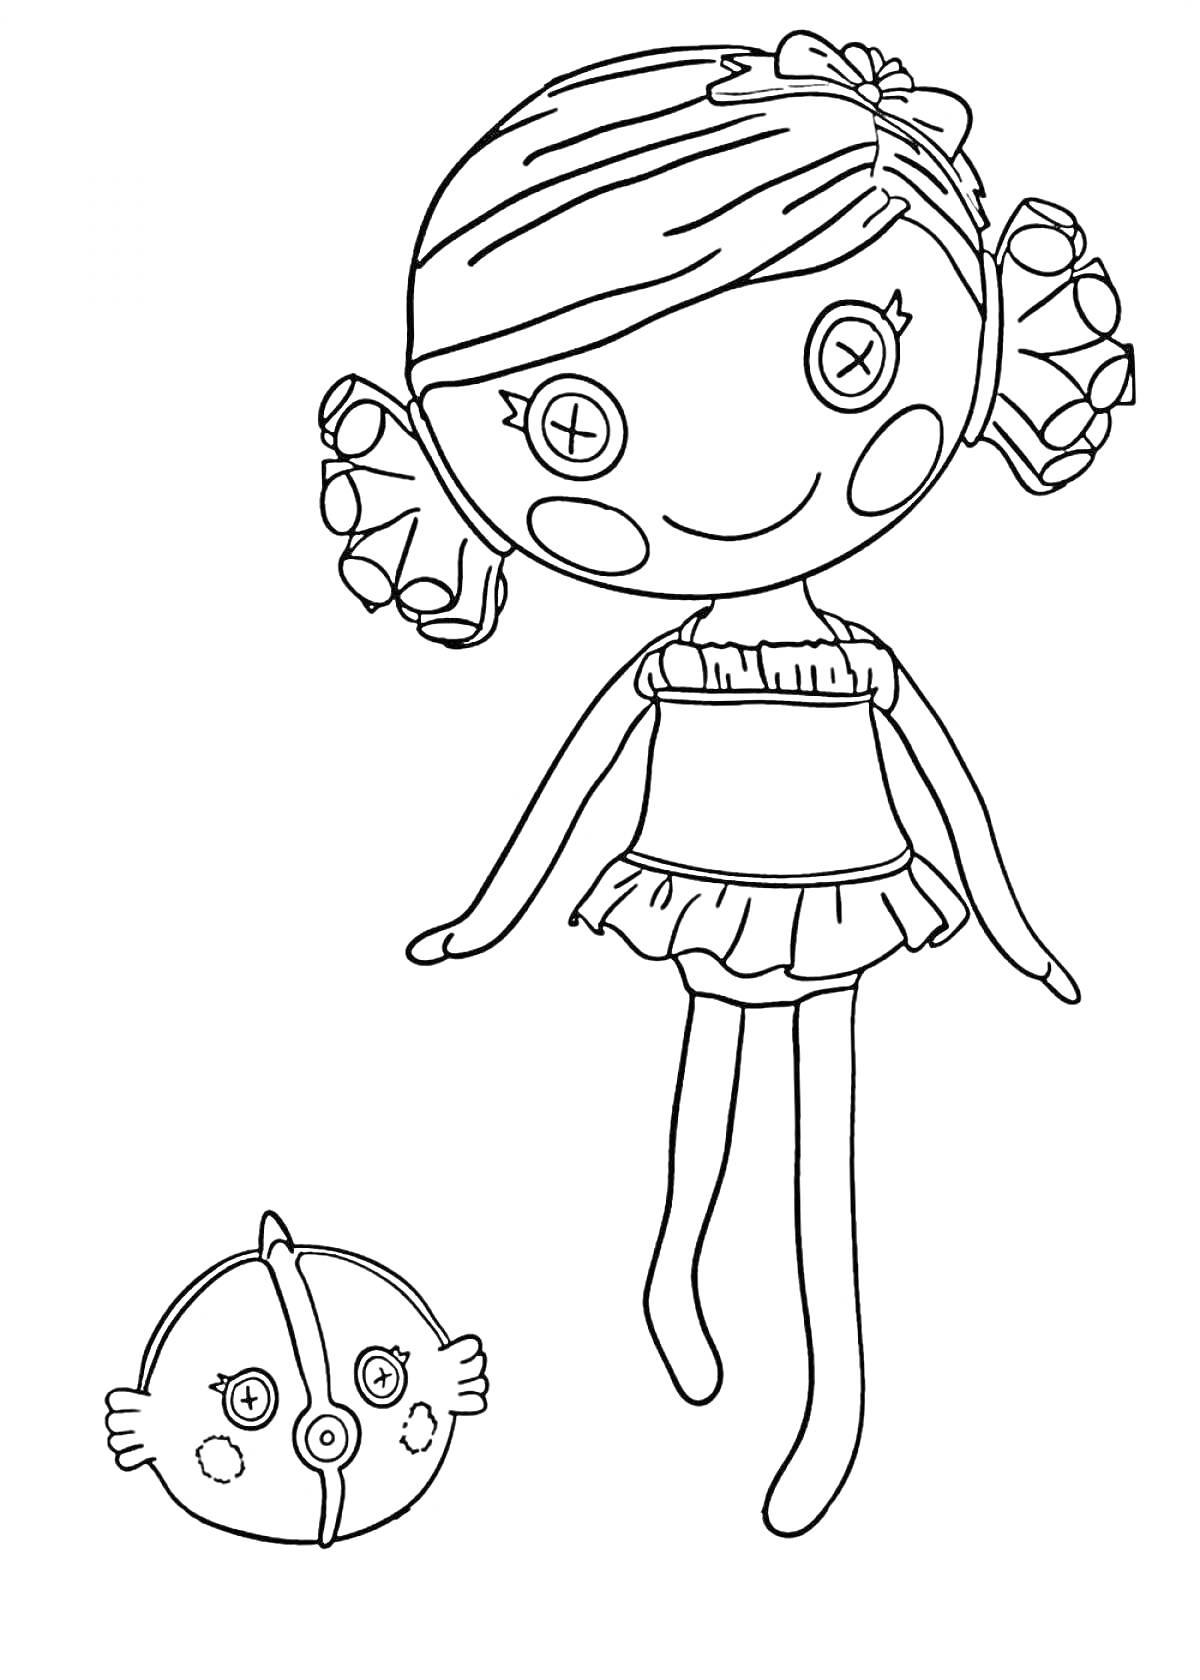 Раскраска Кукла Лалалупси с пуговичными глазами и бантиком на голове, с воздушным шариком